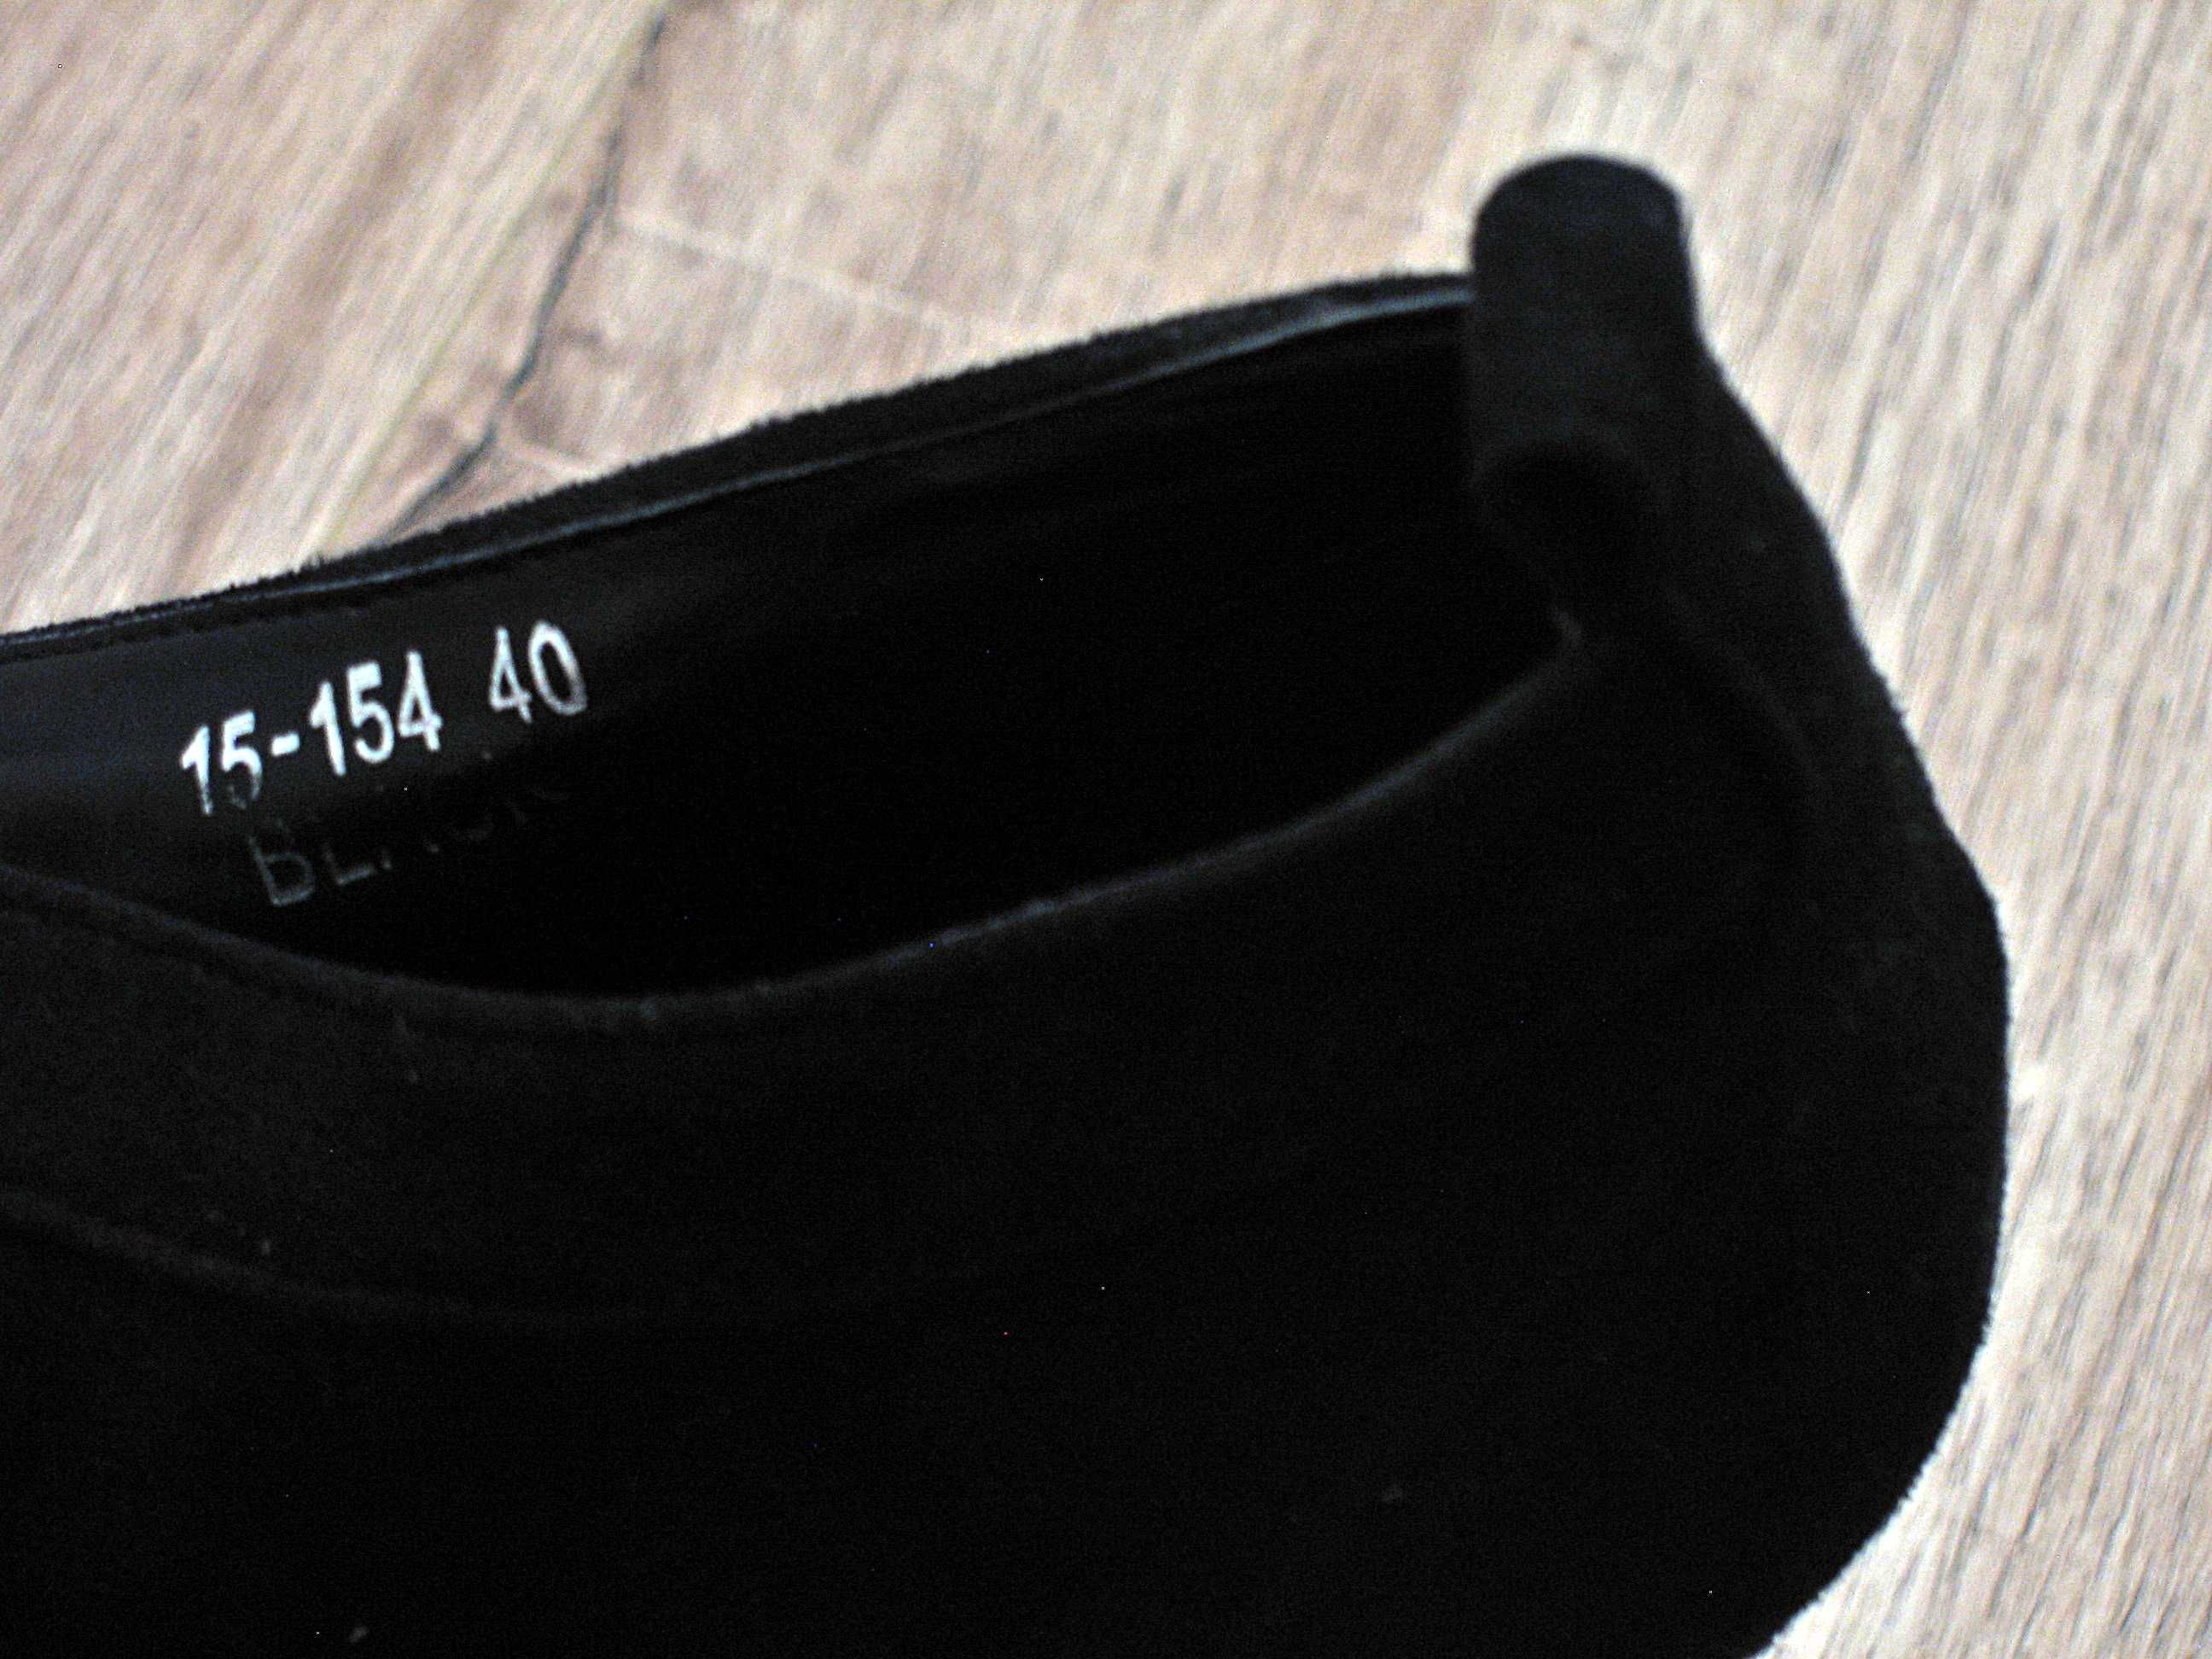 Czarne buty na platformie Jennika, rozmiar 40, nubuk, używane